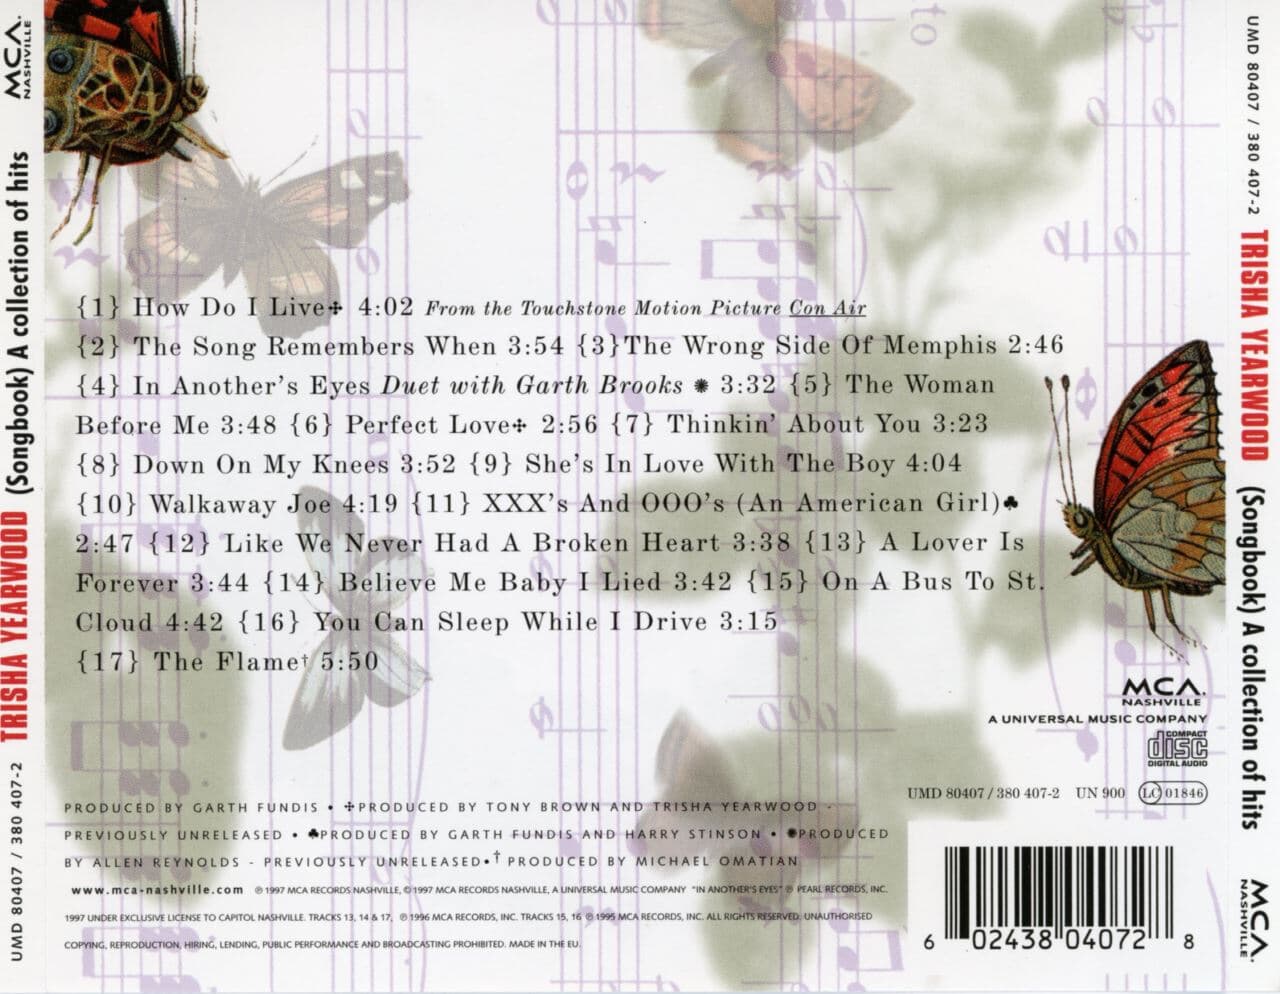 트리샤 이어우드 - Trisha Yearwood - (Songbook) A Collection Of Hits [E.U발매]